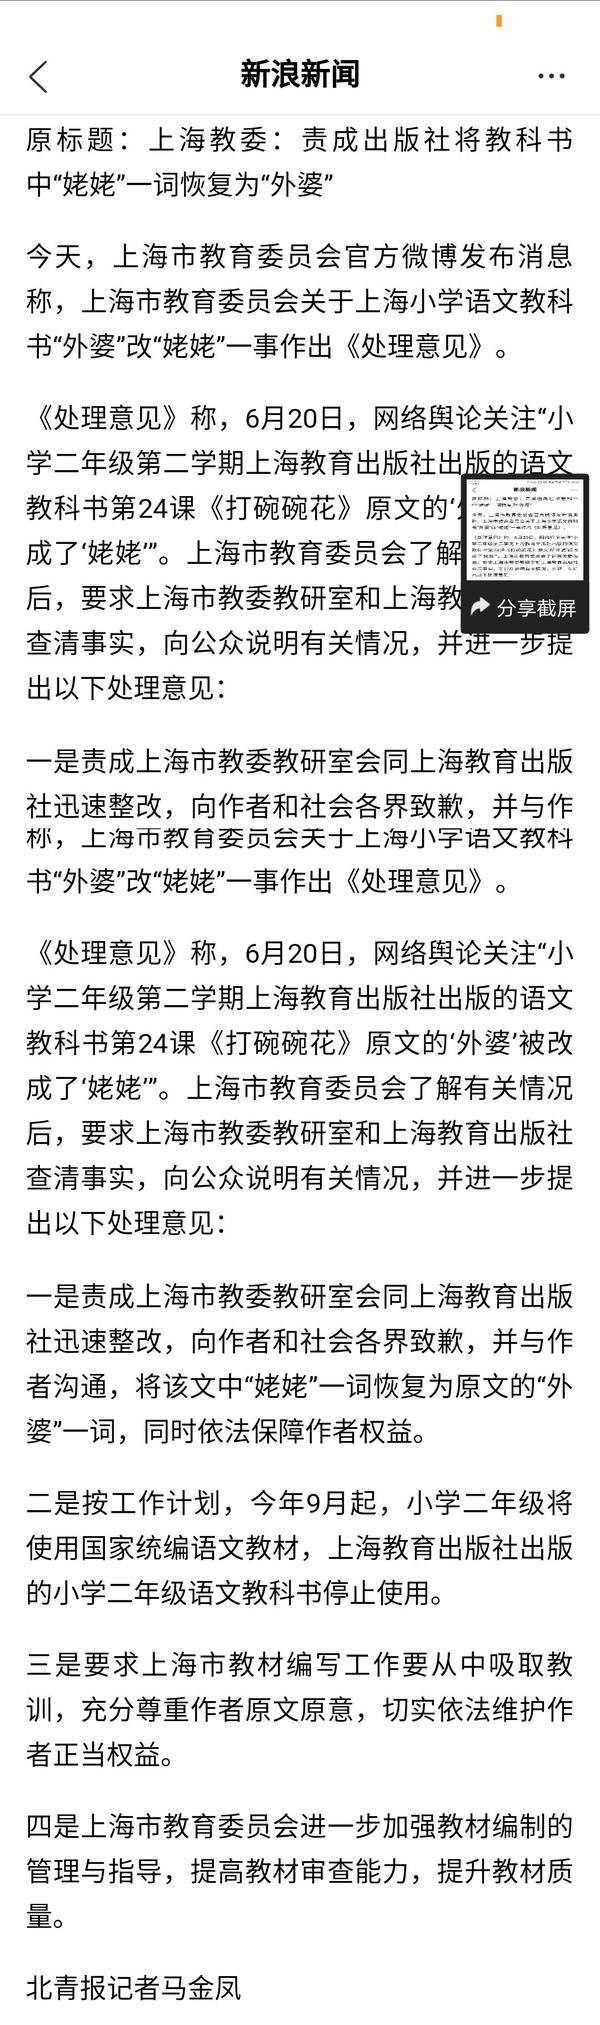 如何评价上海语文教材中把作者原文中的外婆改成了姥姥 且教育局在英译汉问题中回复称 外婆 属于方言 知乎